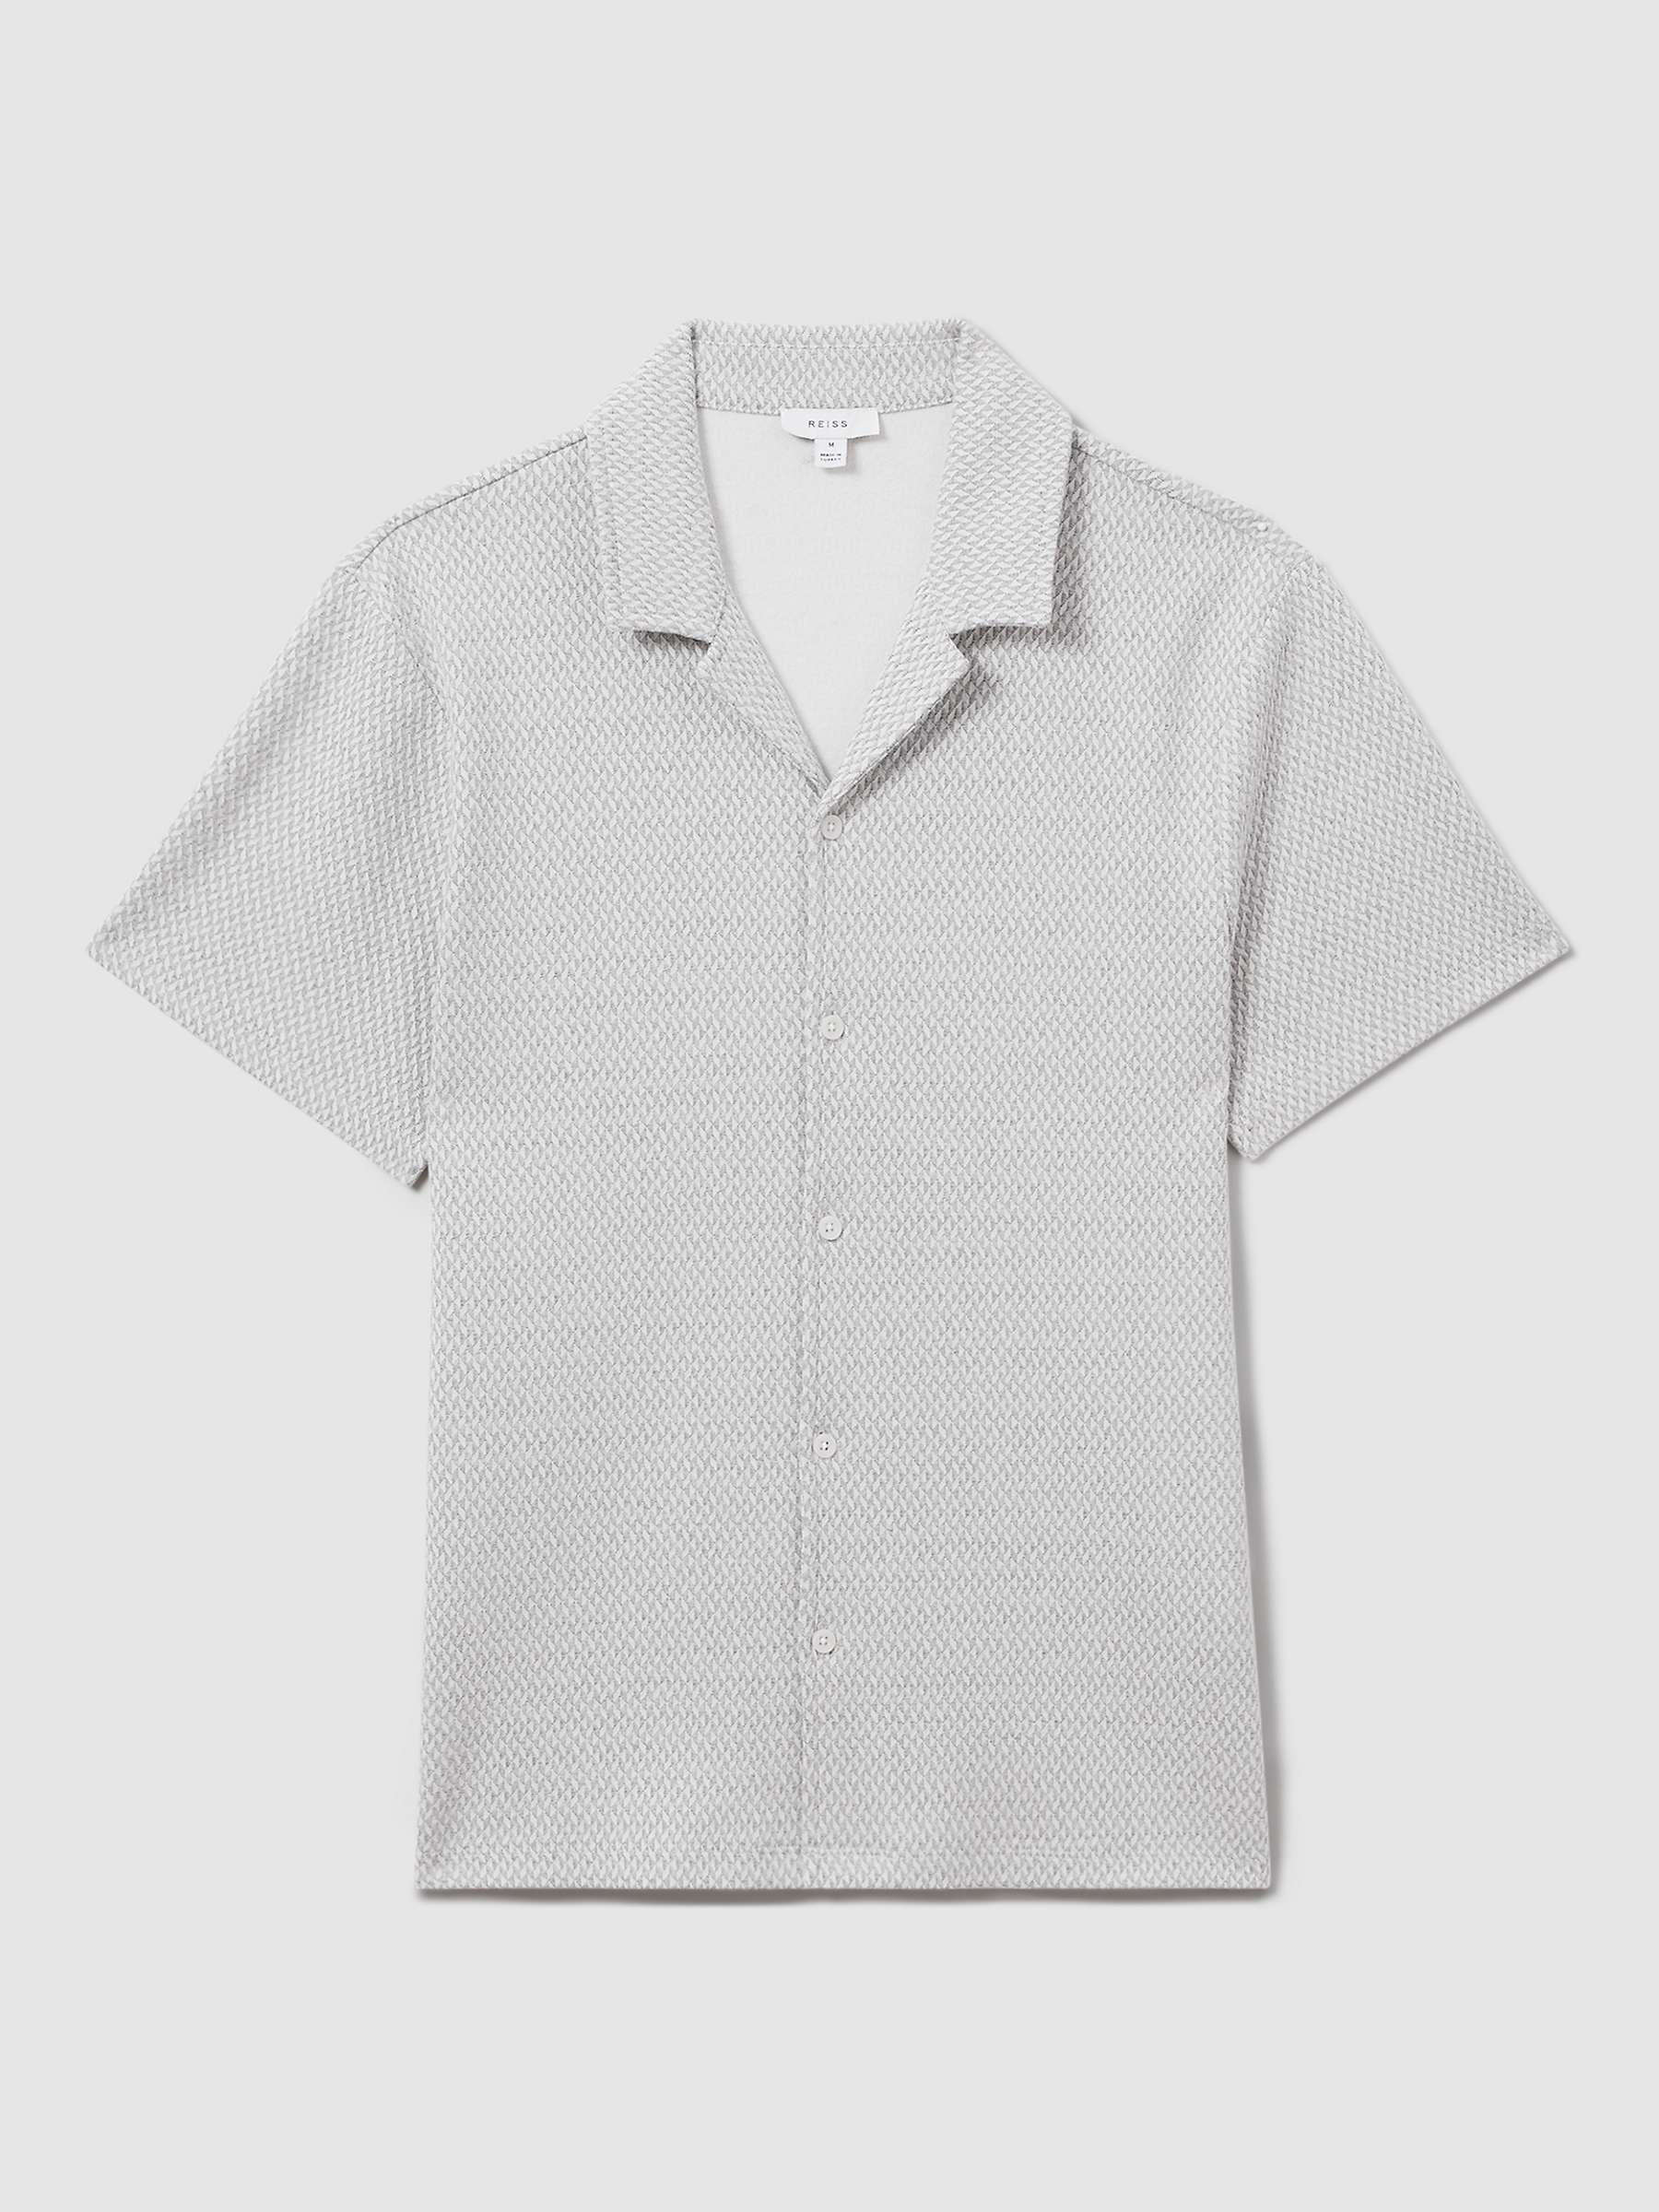 Buy Reiss Brewer Short Sleeve Textured Jacquard Shirt, Light Grey Online at johnlewis.com